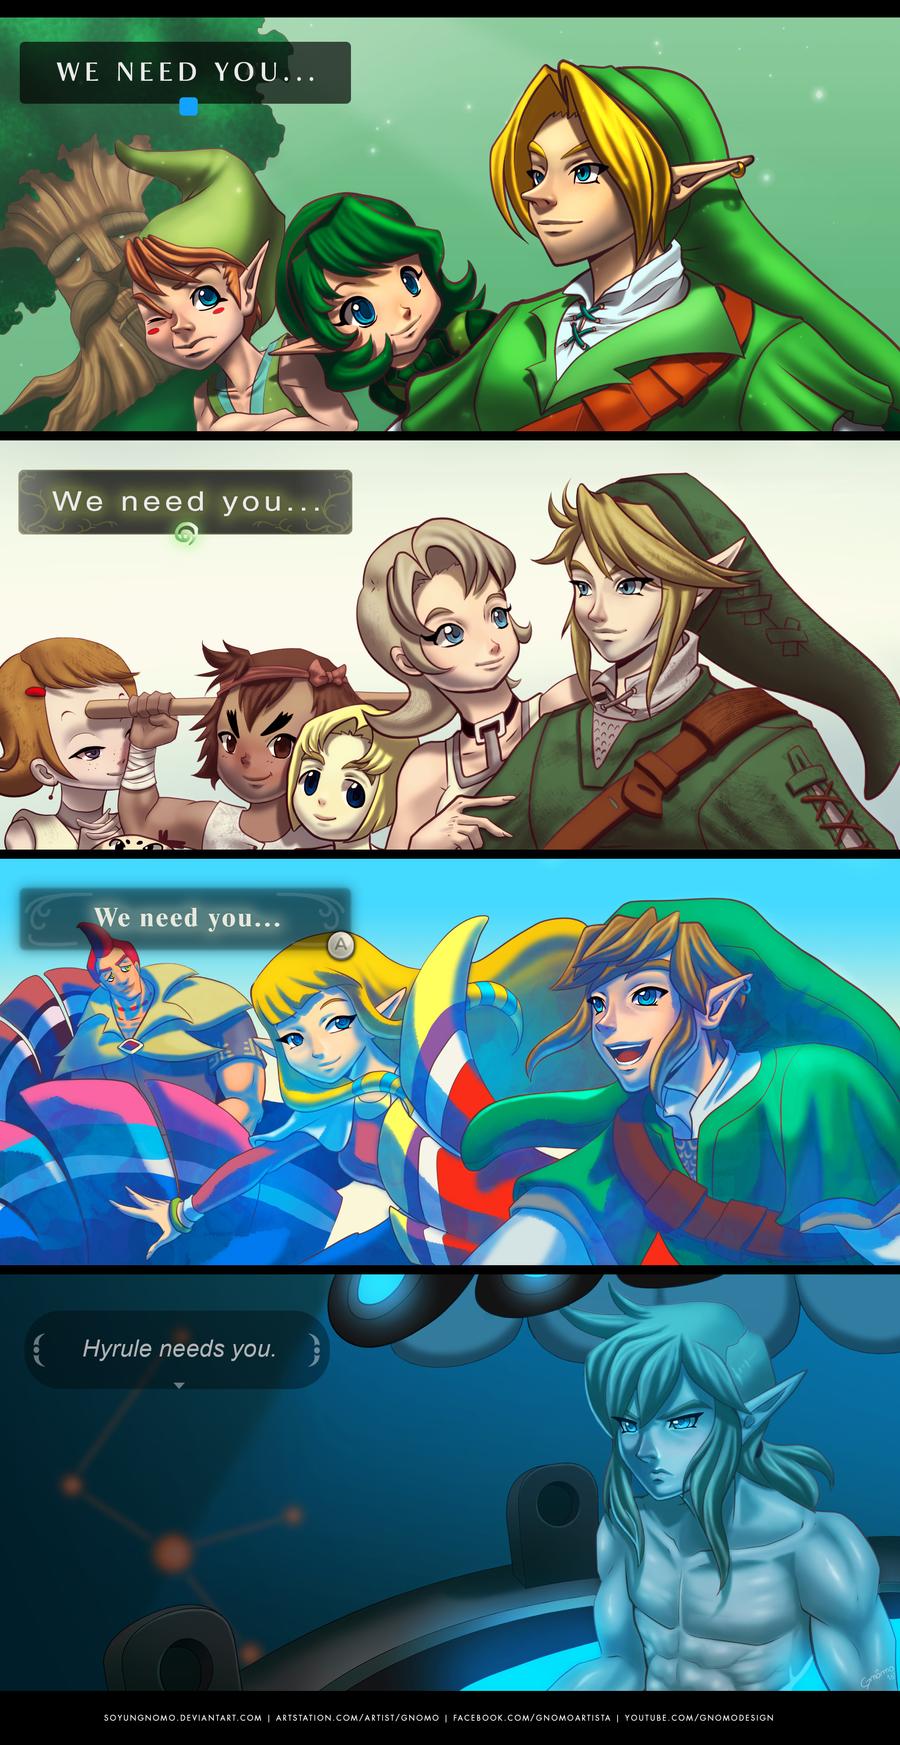 Link from The Legend of Zelda Fan Art